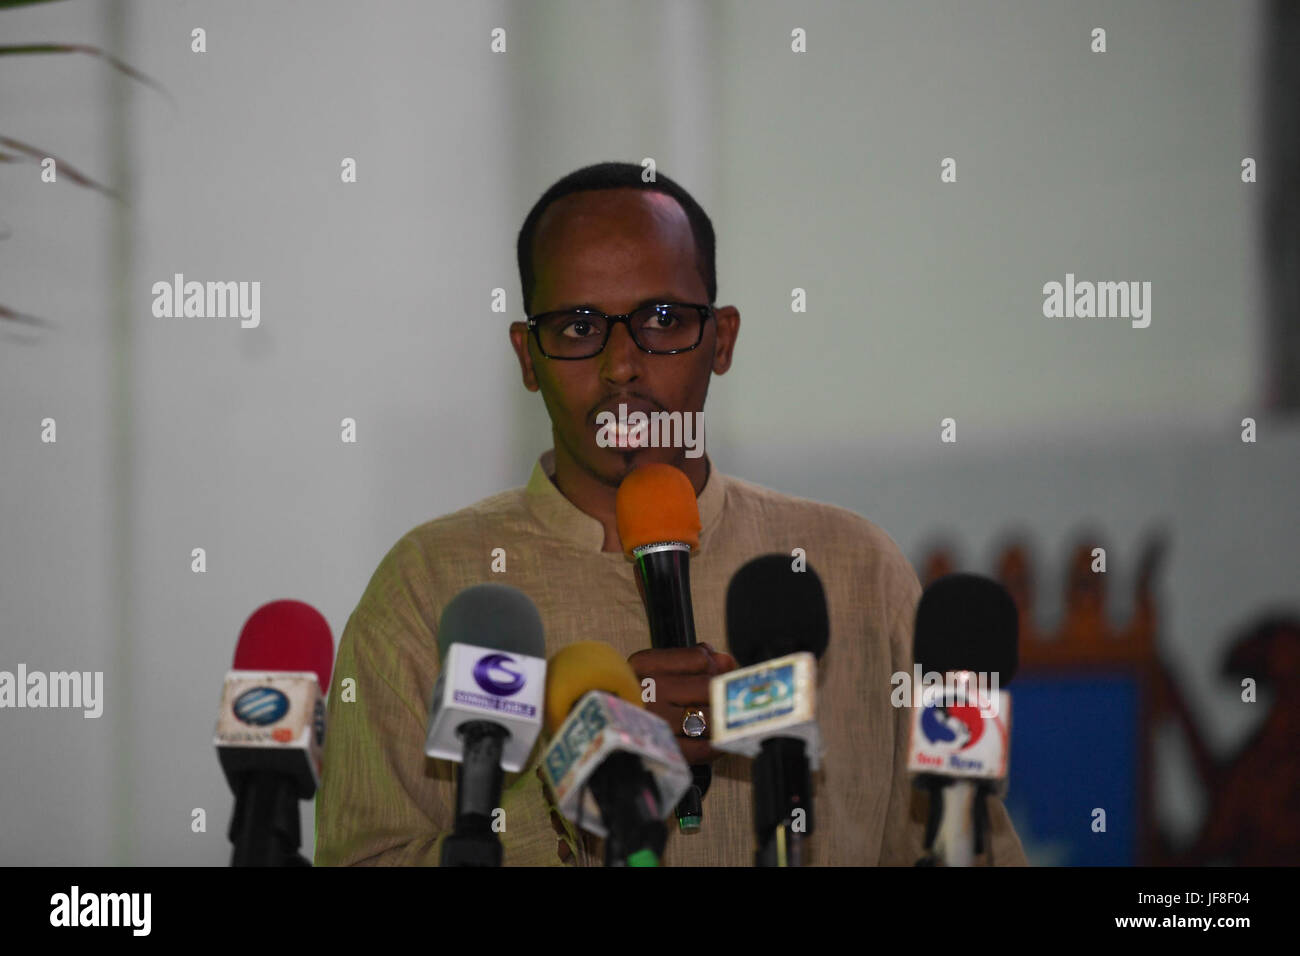 Thabit Abdi Mohamed, le maire de Mogadiscio parle lors d'une cérémonie pour marquer le 57e anniversaire de la journée des régions du nord de la Somalie ont obtenu leur indépendance de la Grande-Bretagne le 26 juin 1960. Cet événement a eu lieu à Mogadiscio's town hall le 26 juin 2017. L'AMISOM Photo / Ilyas Ahmed Banque D'Images